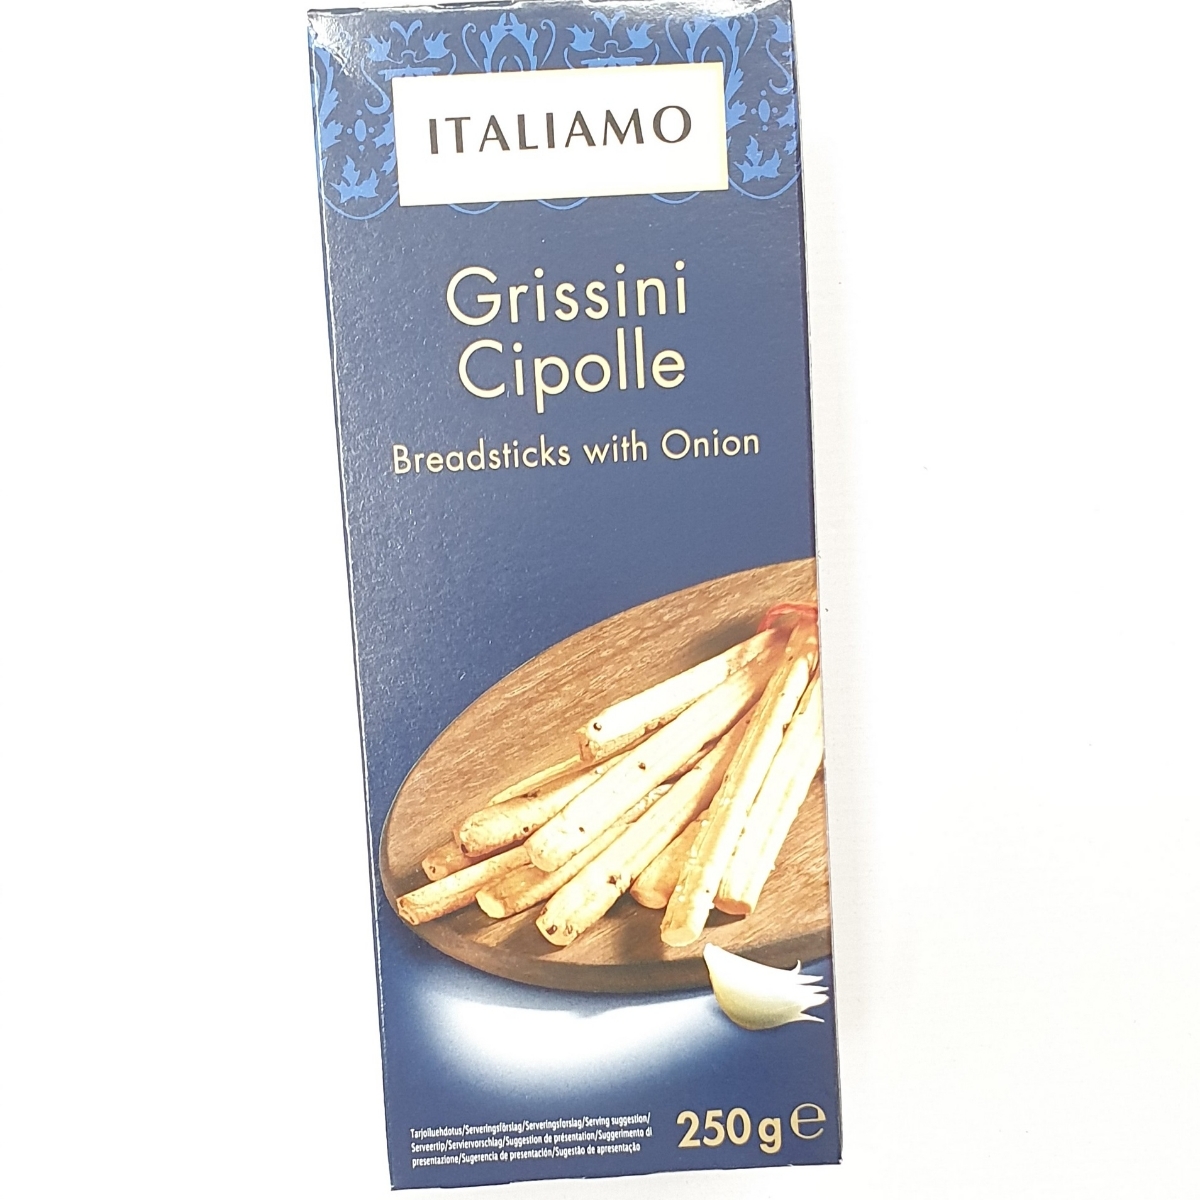 Italiamo Grissini abillion | Review Cipolle